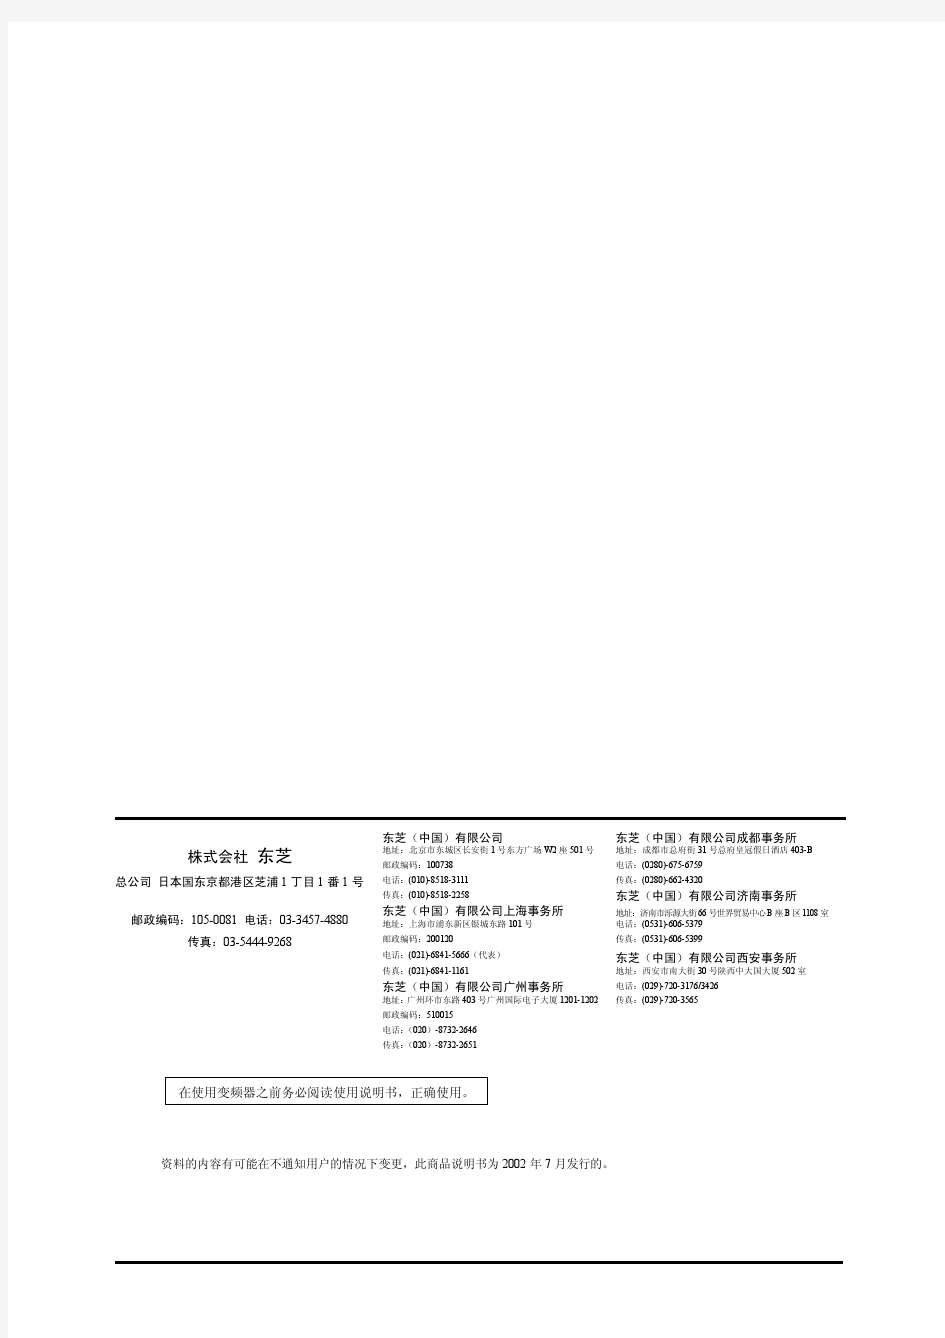 TOSVERT VF-A7 系列东芝变频器中文操作手册